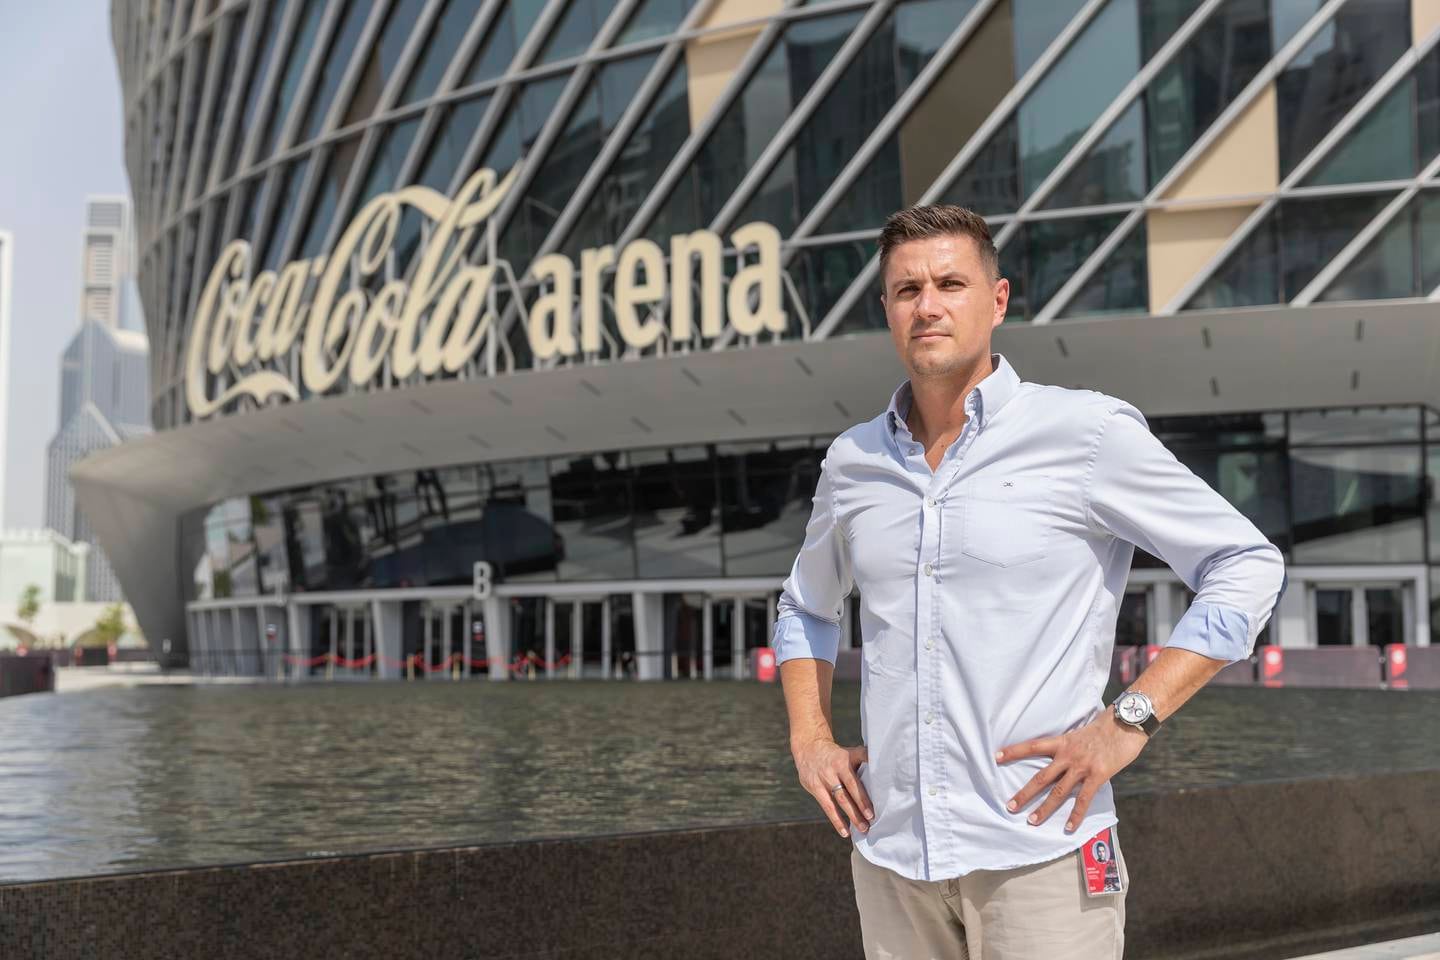 يقول المدير العام لشركة Coca-Cola Arena ، مارك جيونكر ، إن المكان سيكون مثيرًا في المستقبل.  أنتوني روبرتسون / ذا ناشيونال